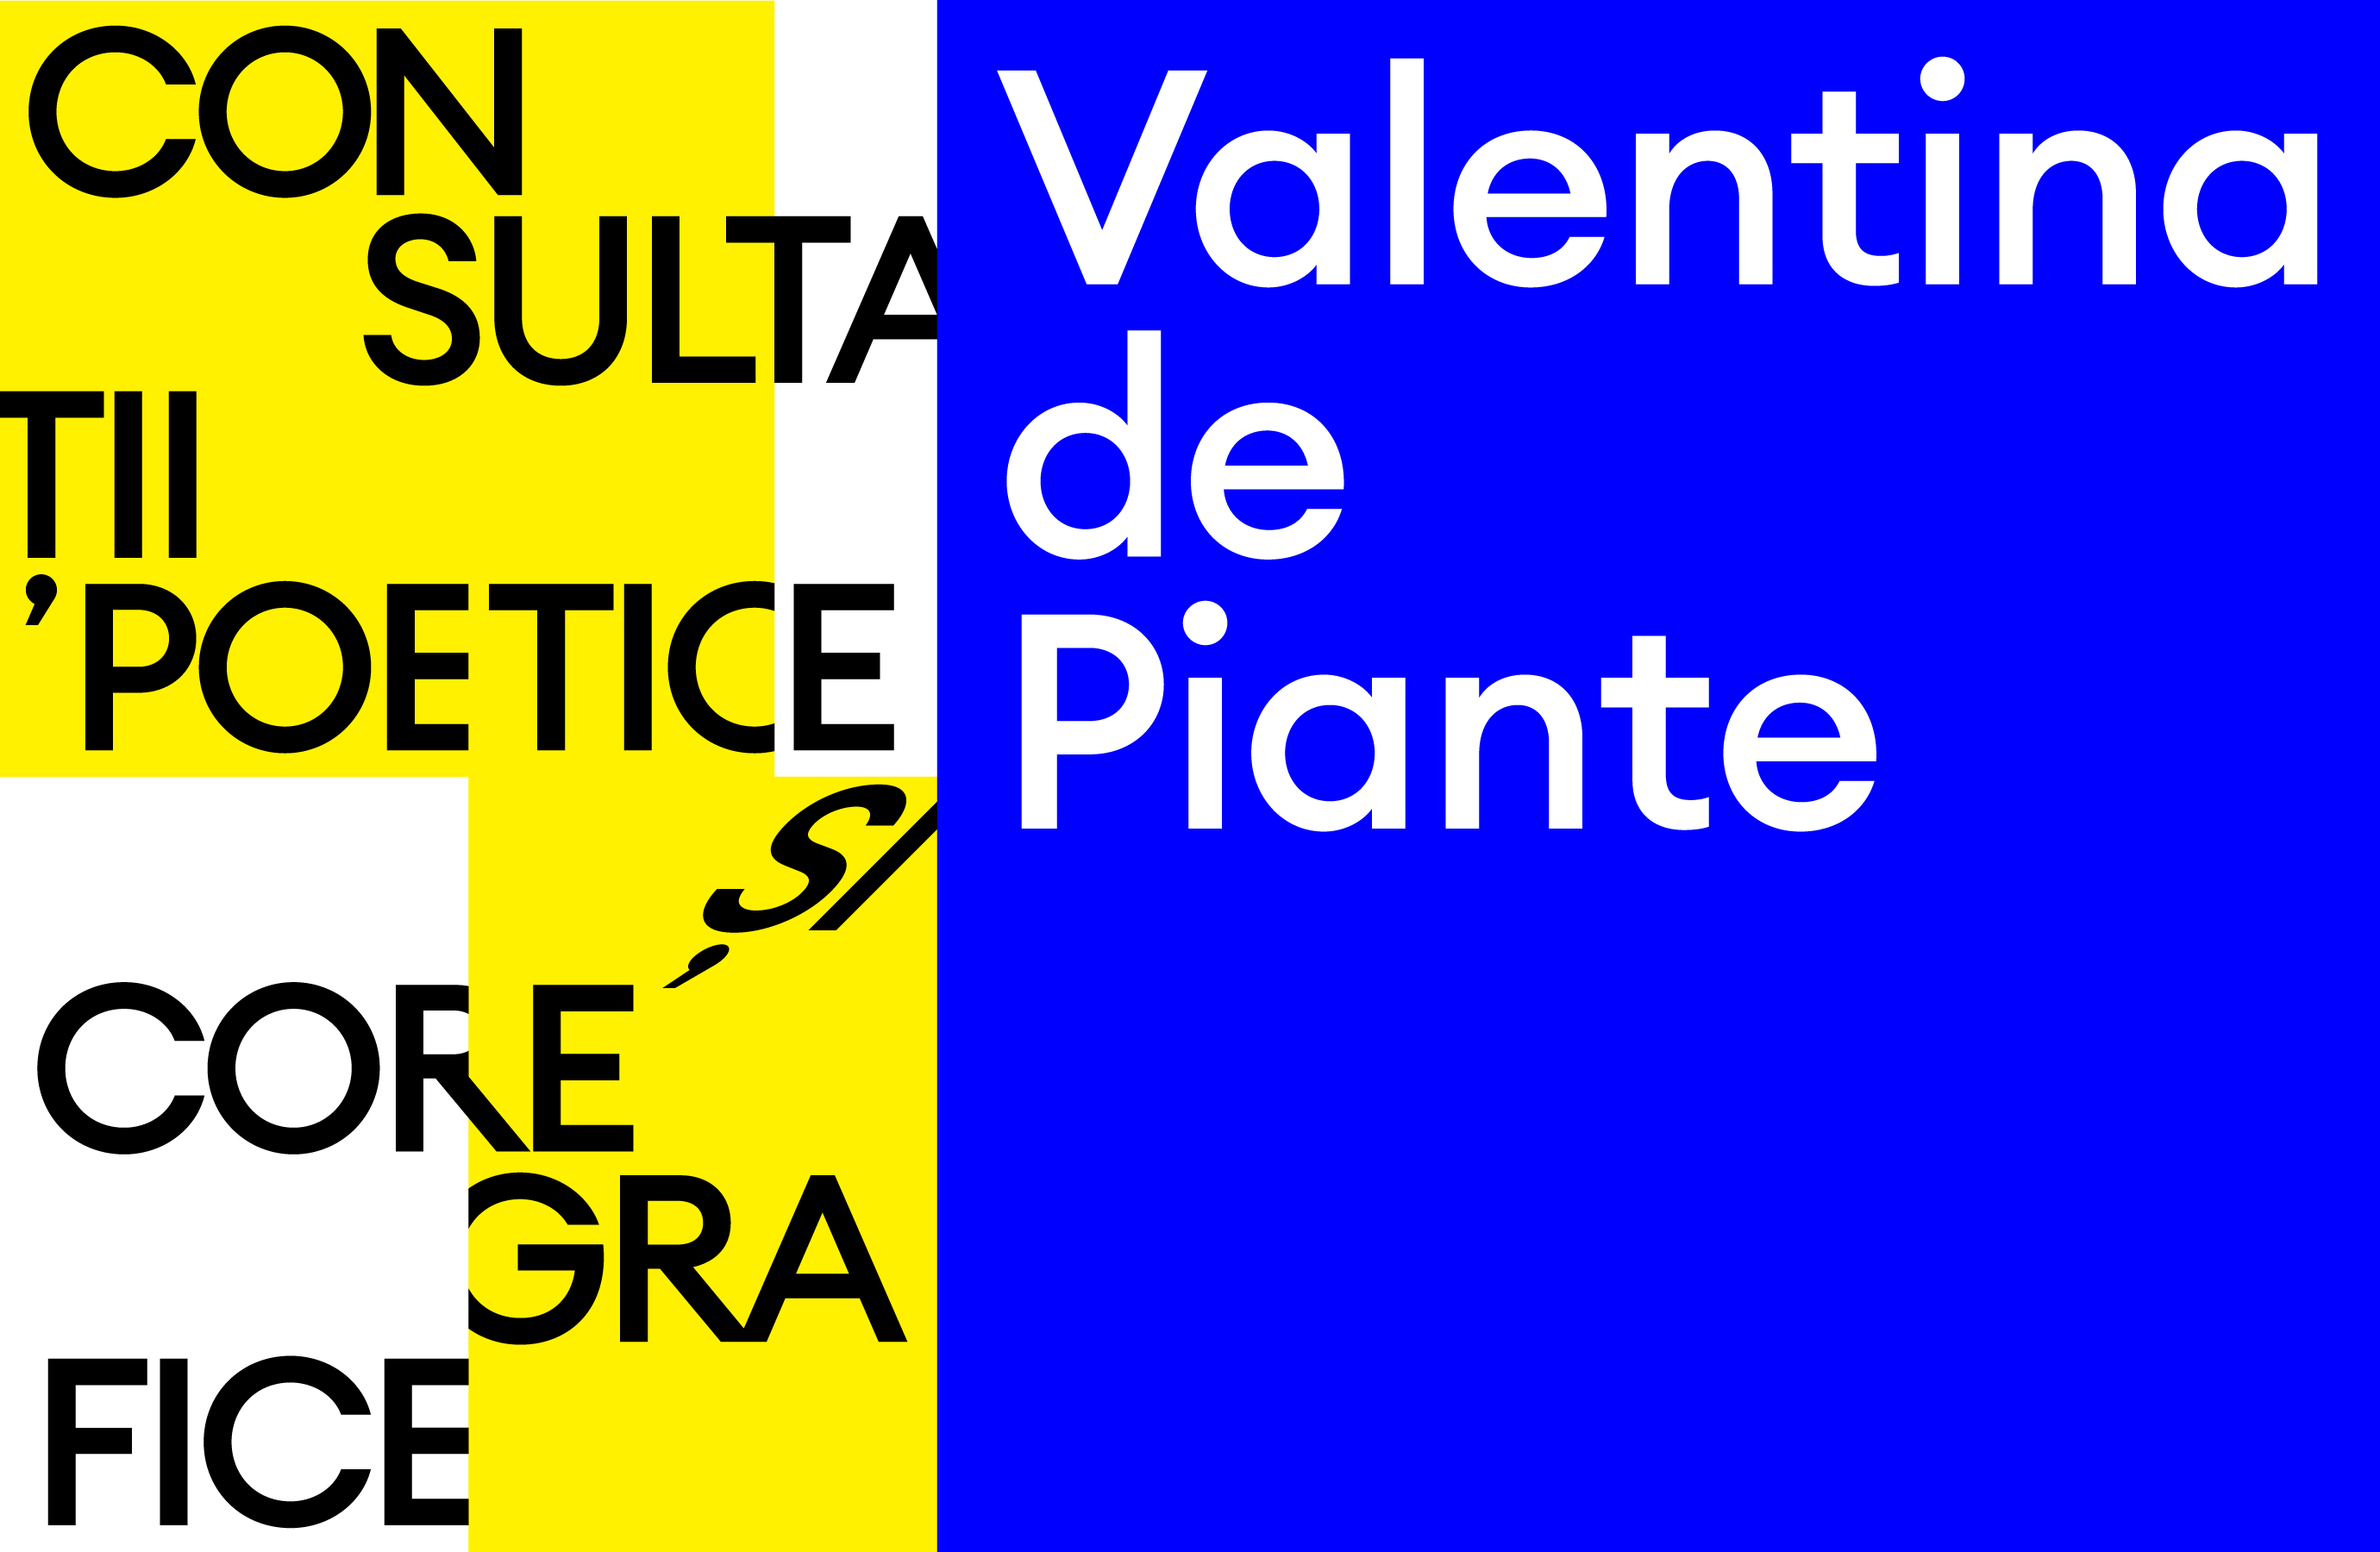 Consultațiile poetice și coregrafice - cu Valentina de Piante